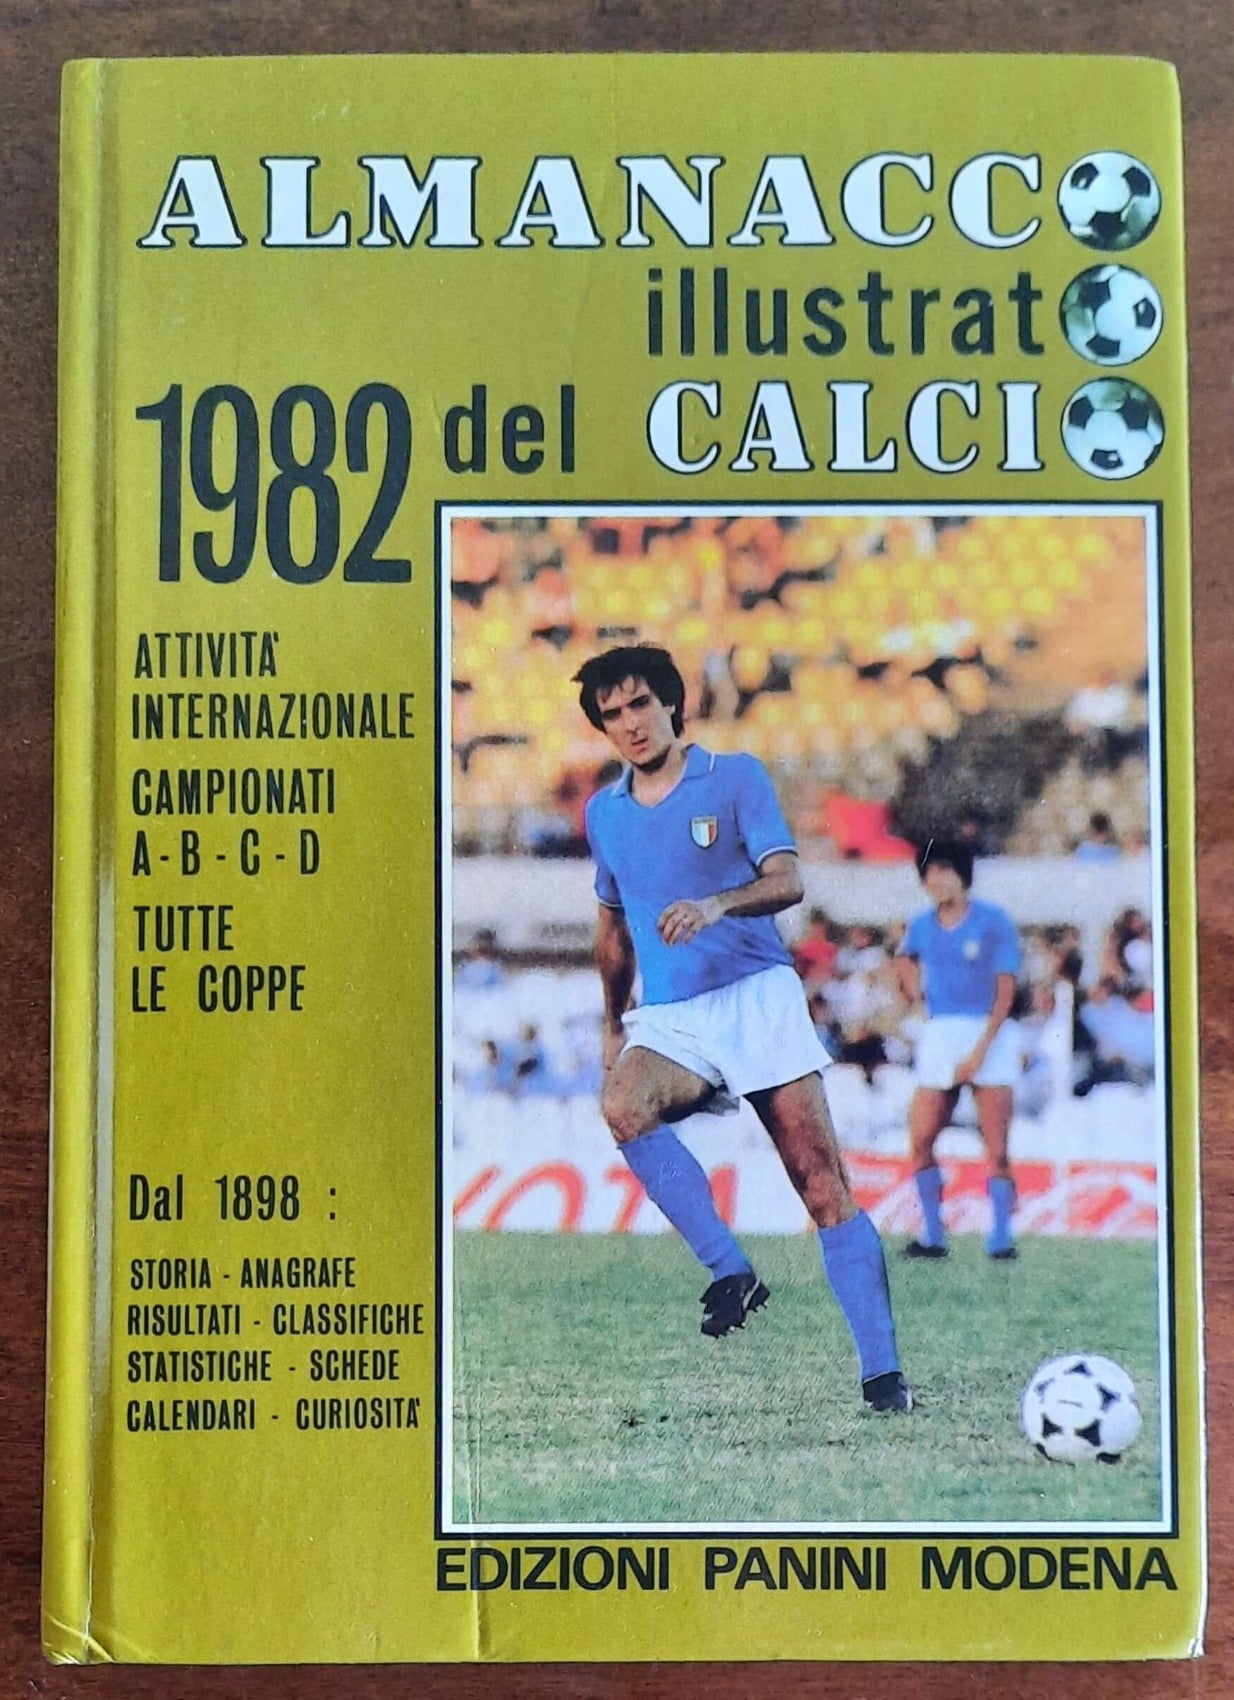 Almanacco illustrato del calcio 1982 - Edizioni Panini